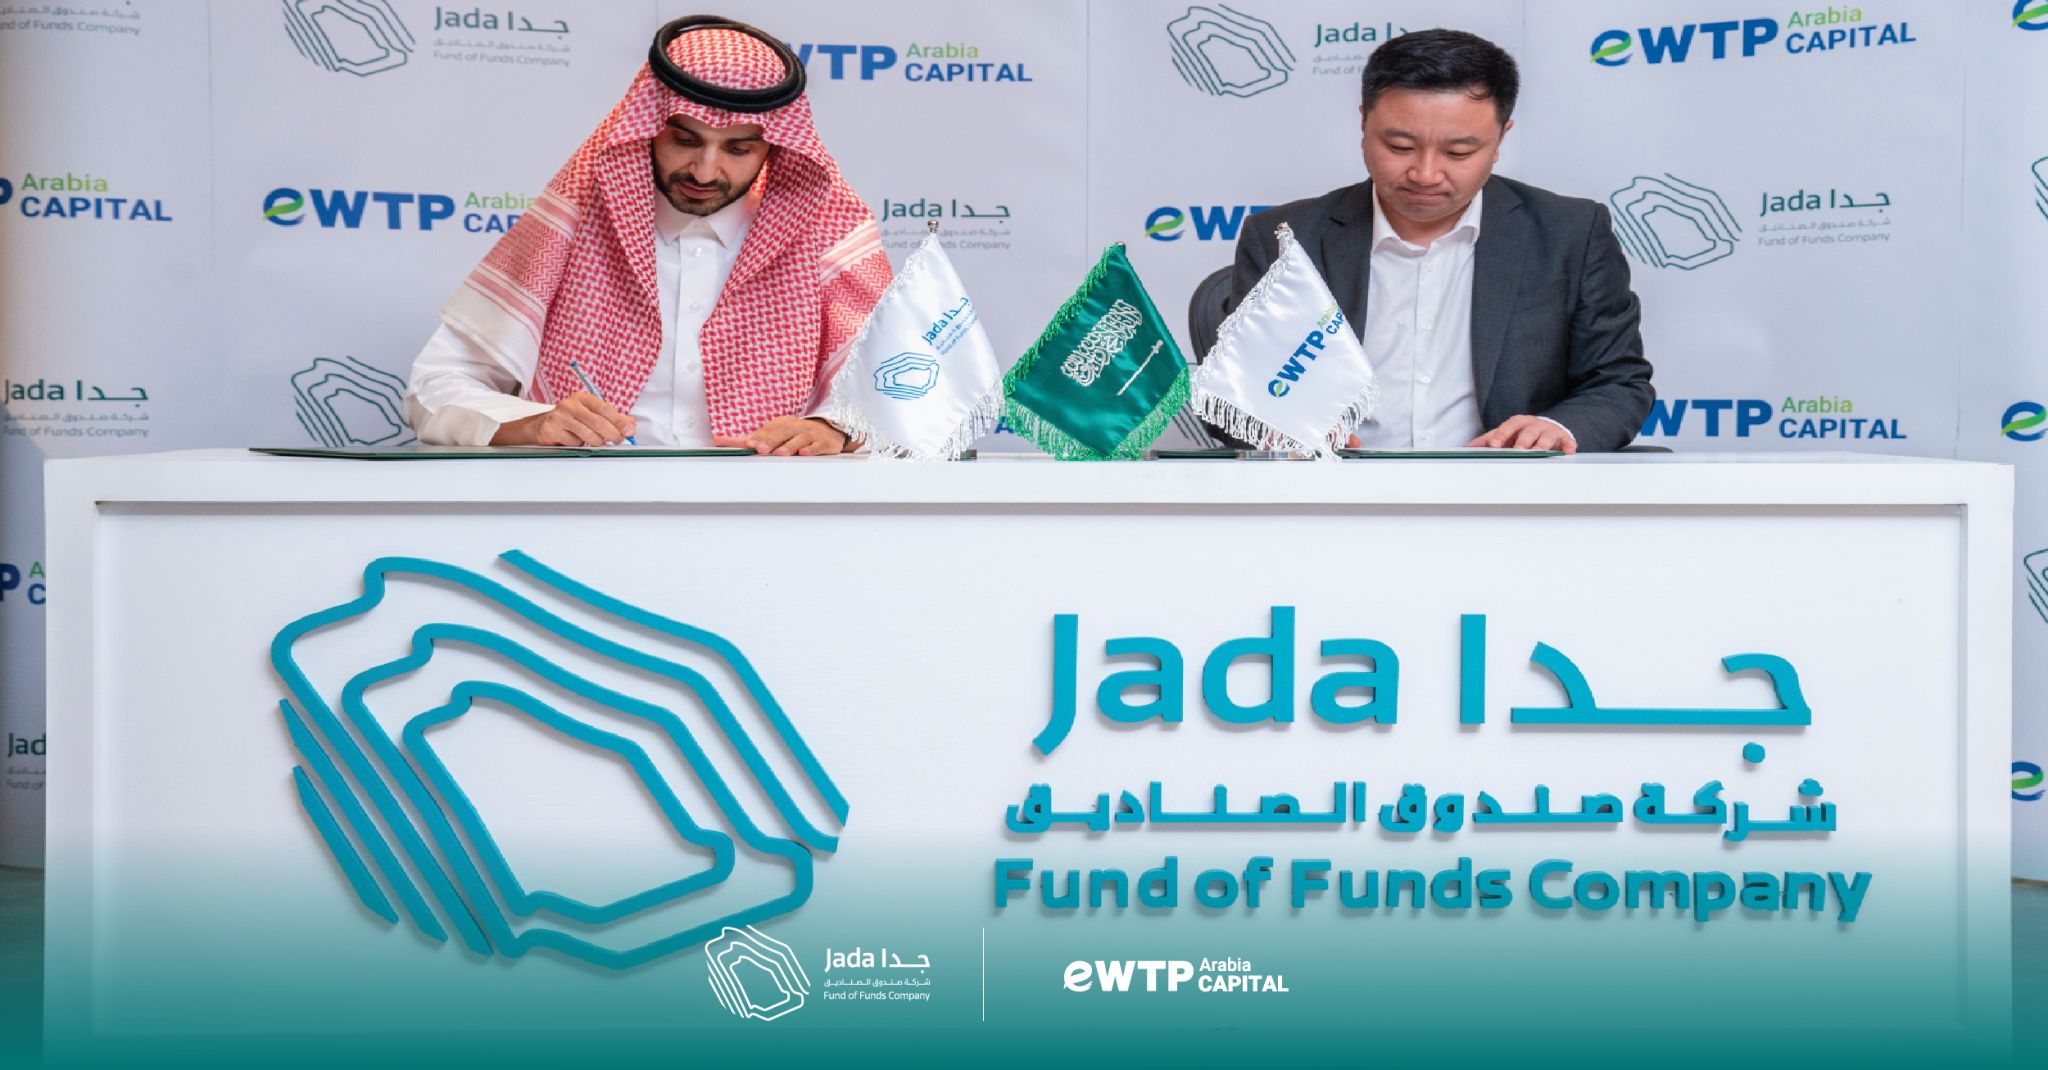 صندوق الصناديق جدا يوقع اتفاقية استثمار مع eWTP Arabia